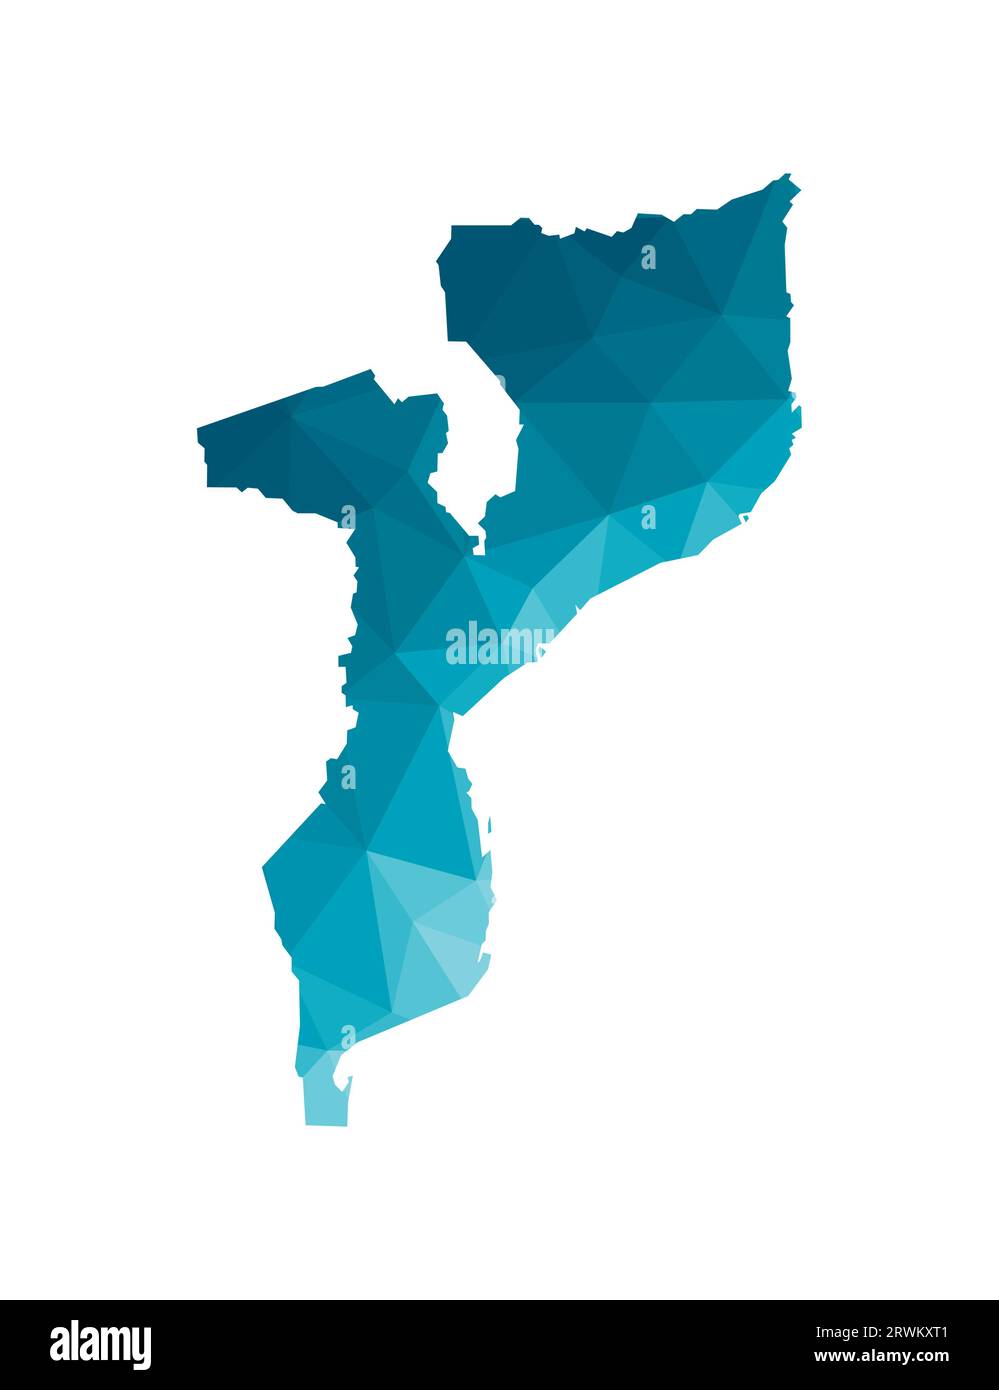 Icona di illustrazione vettoriale isolata con sagoma blu semplificata della mappa della Repubblica del Mozambico. Stile geometrico poligonale, forme triangolari. B bianco Illustrazione Vettoriale